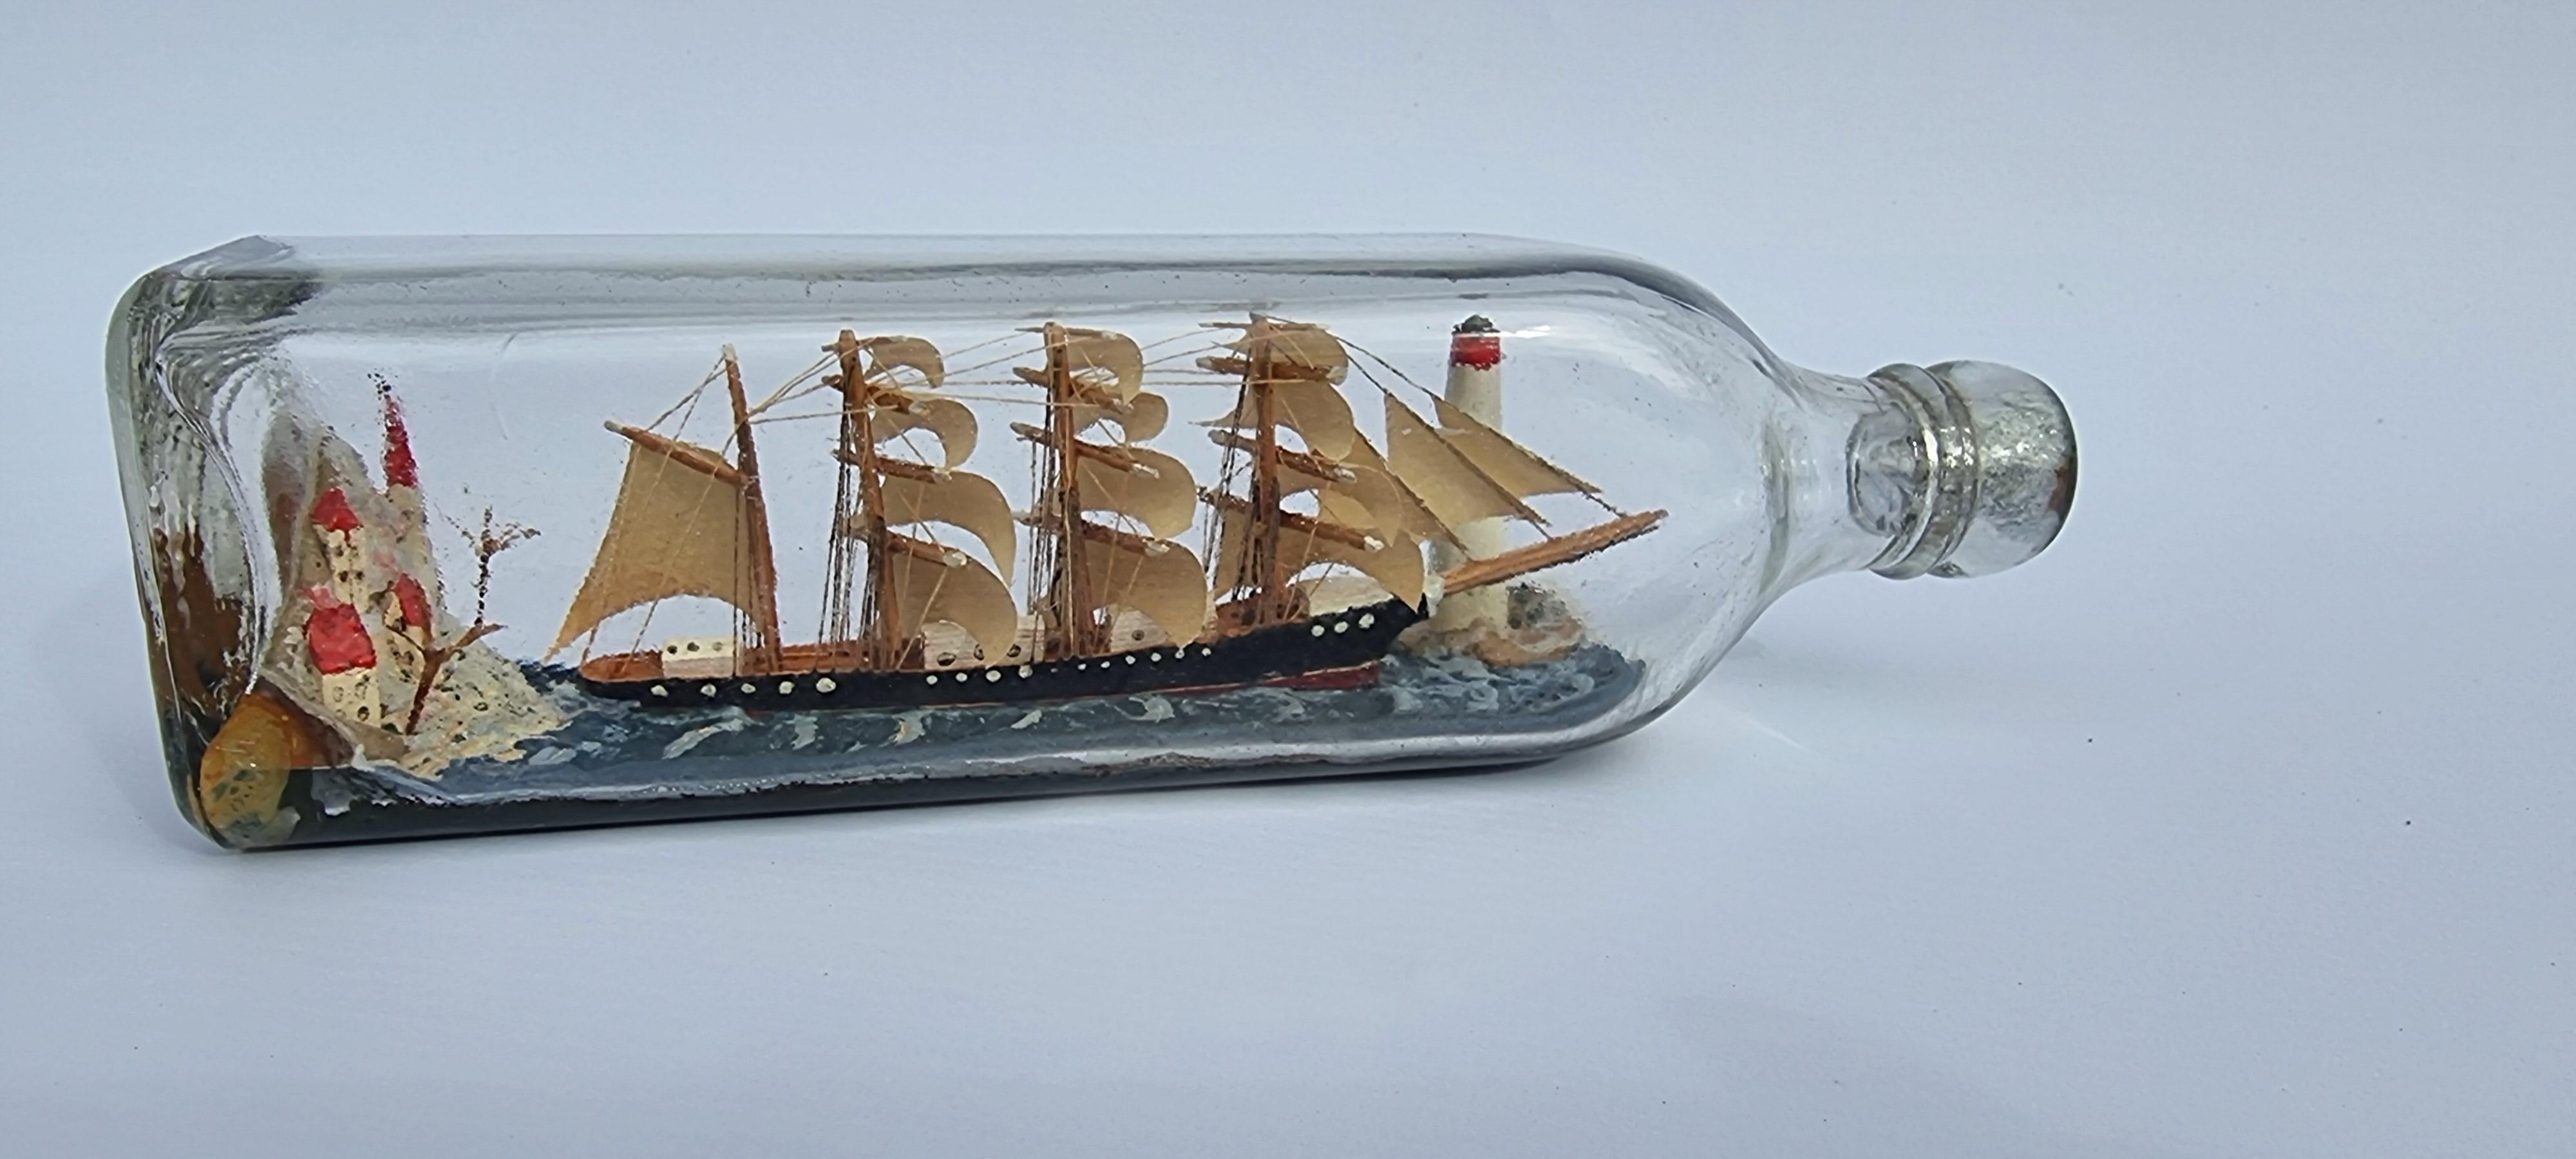 
Dieses sehr gute Exemplar wurde von Hand in einer kleineren quadratischen Flasche hergestellt, als man sie normalerweise sieht. Es zeigt ein großes Viermast-Schiff aus dem 18. Jahrhundert, das voll aufgetakelt und mit offenen Segeln die von hohen